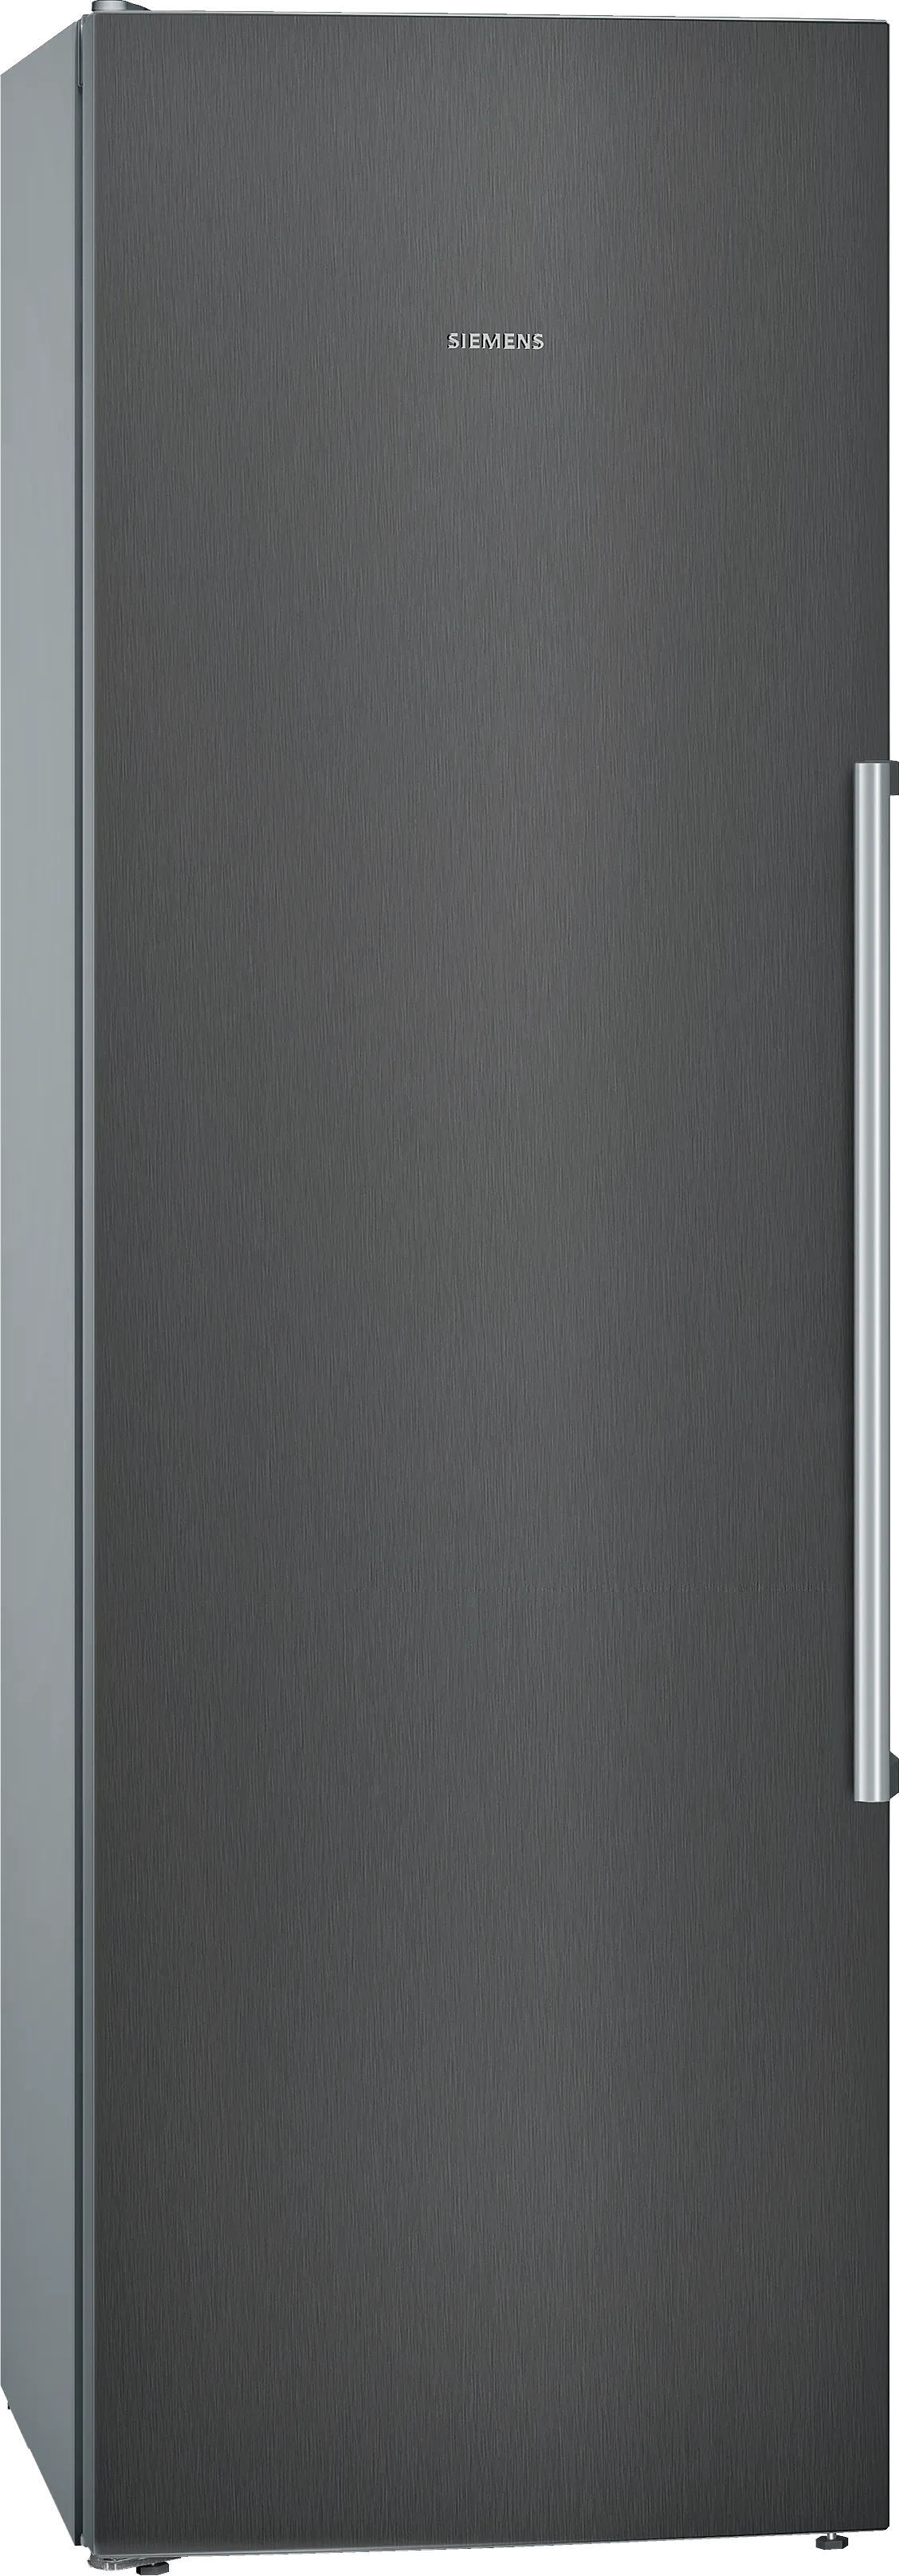 iQ500 Freestanding Fridge 186 x 60 cm Black stainless steel 